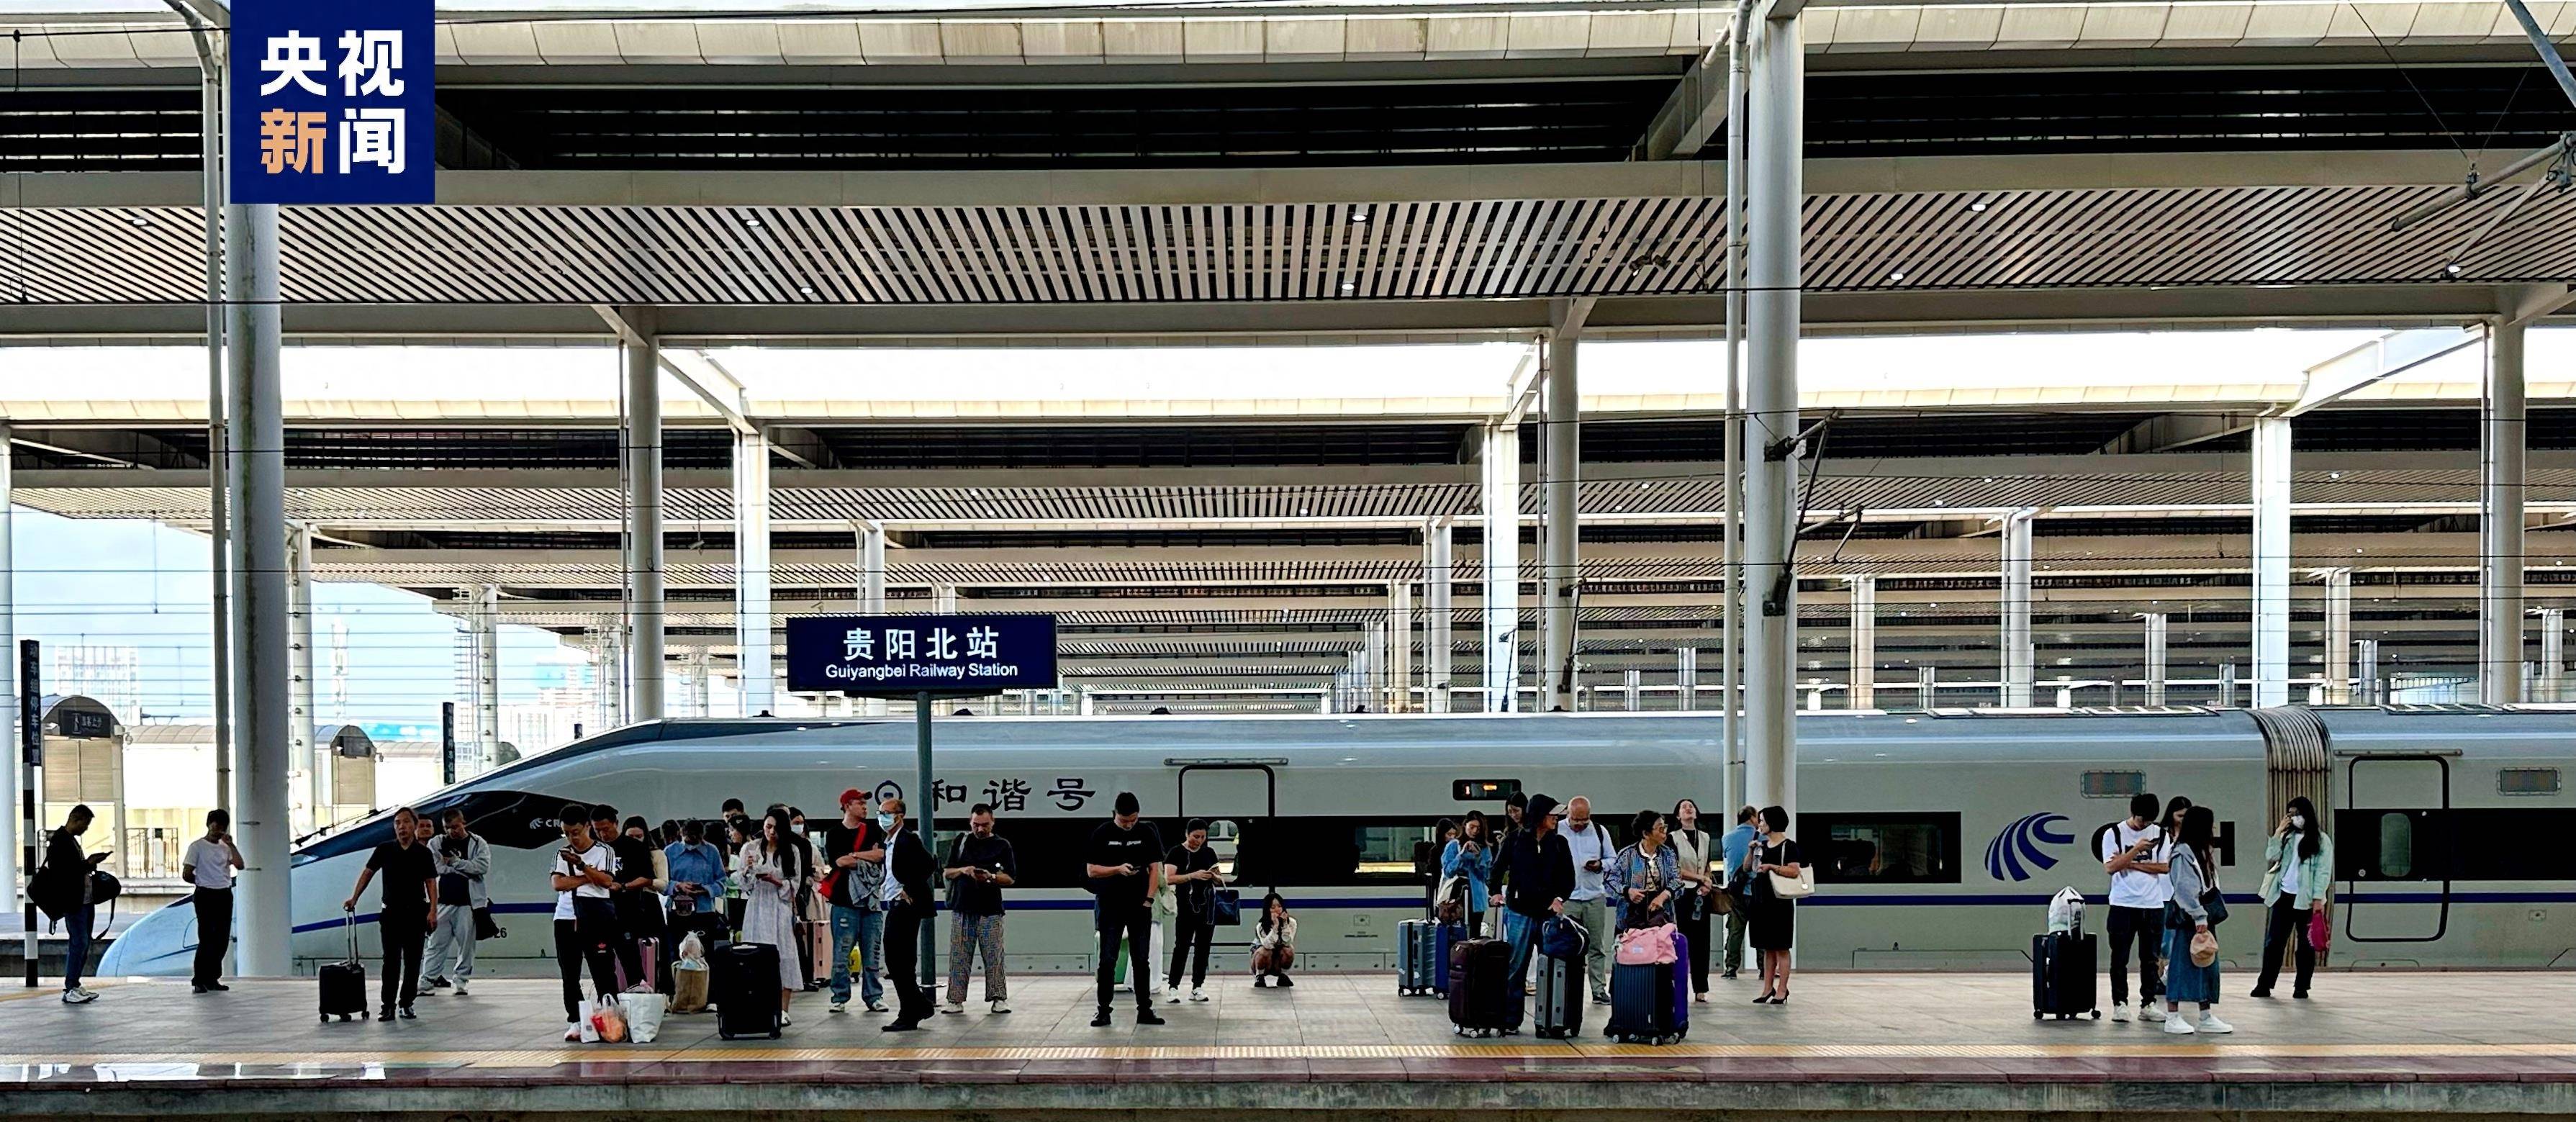 坐着高铁看中国 这些铁路线带你纵览祖国风光